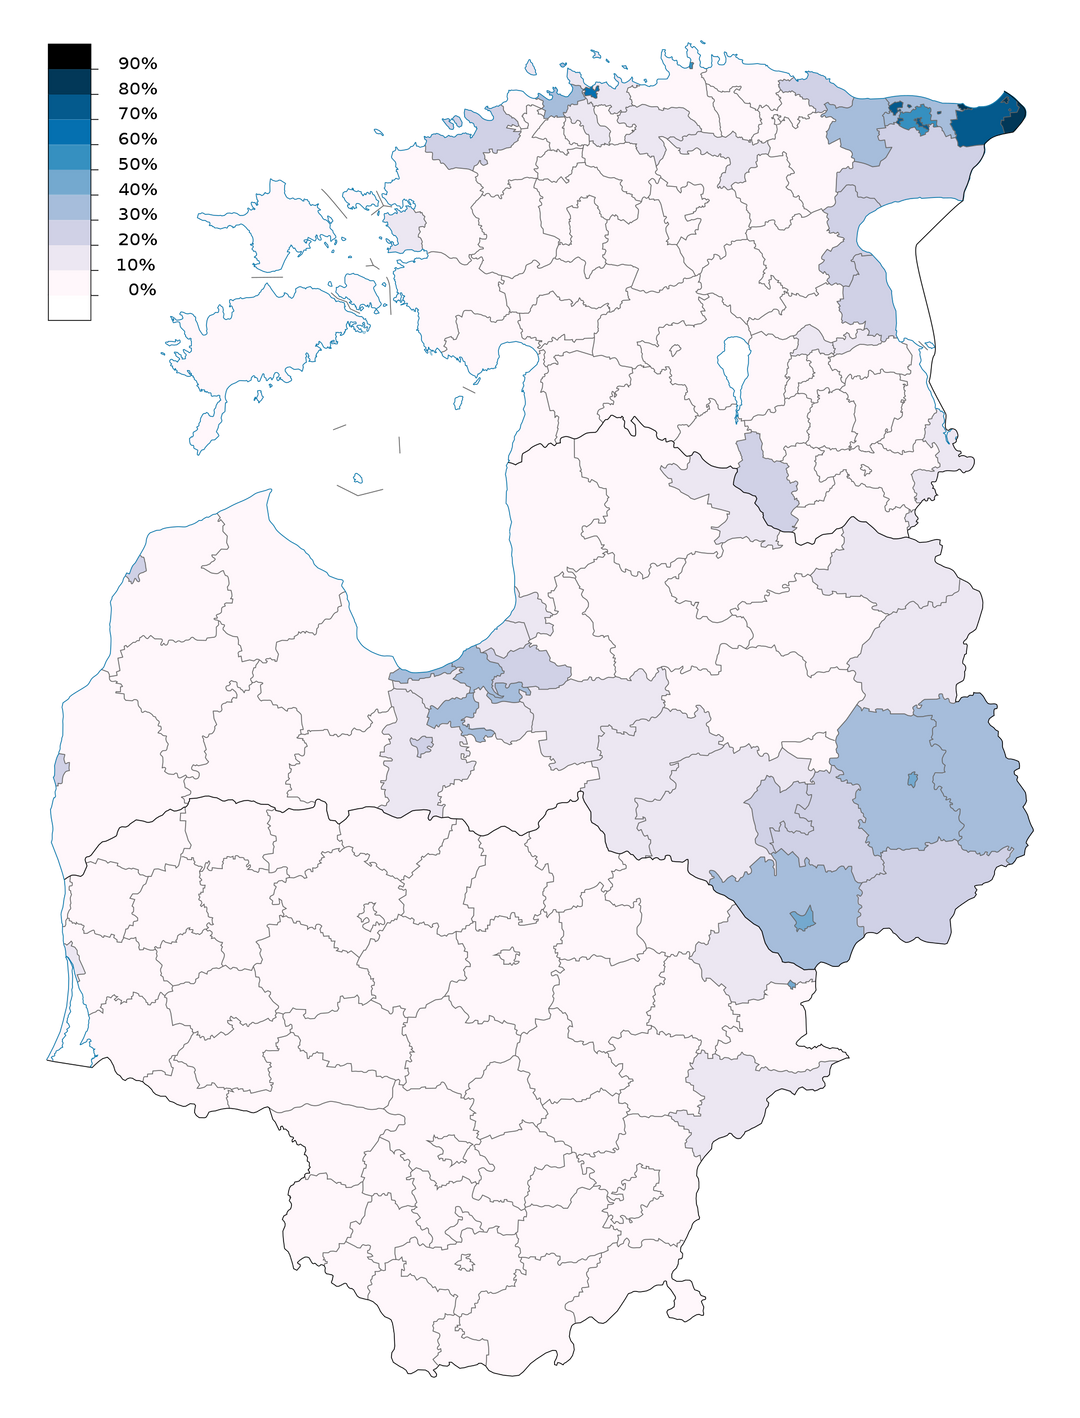 Доля русских среди всего населения в странах Балтии (Эстонии, Латвии, Литве) по данным переписи 2021 года